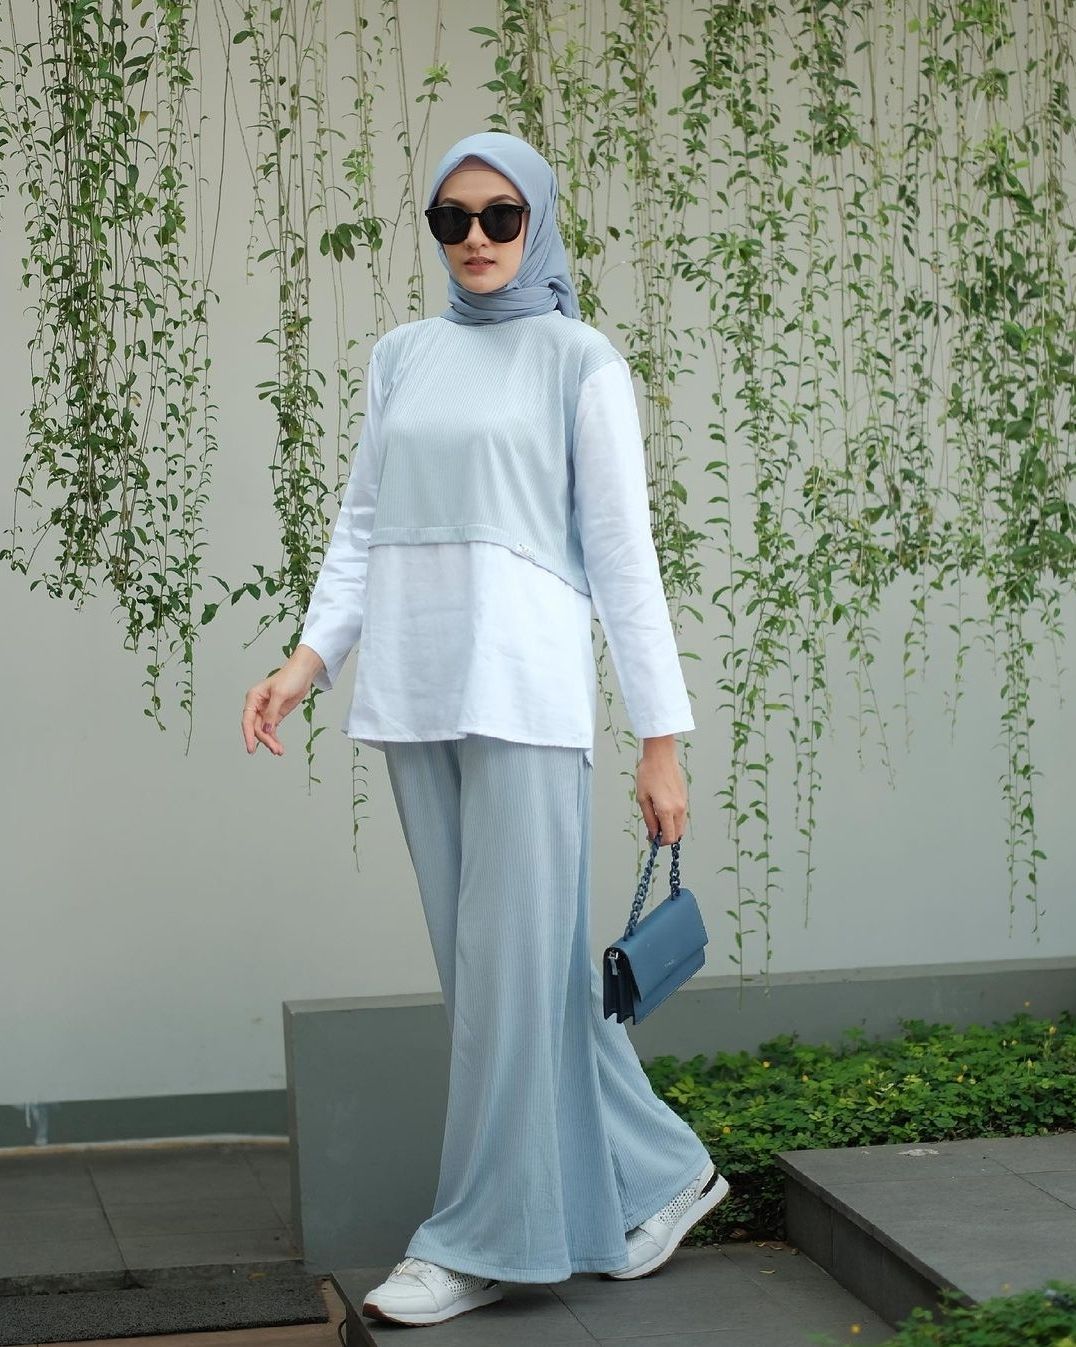 Perhatikan 5 Cara Berpakaian Menurut Islam, Ini Triknya Tutup Aurat Namun Tetap Fashionable